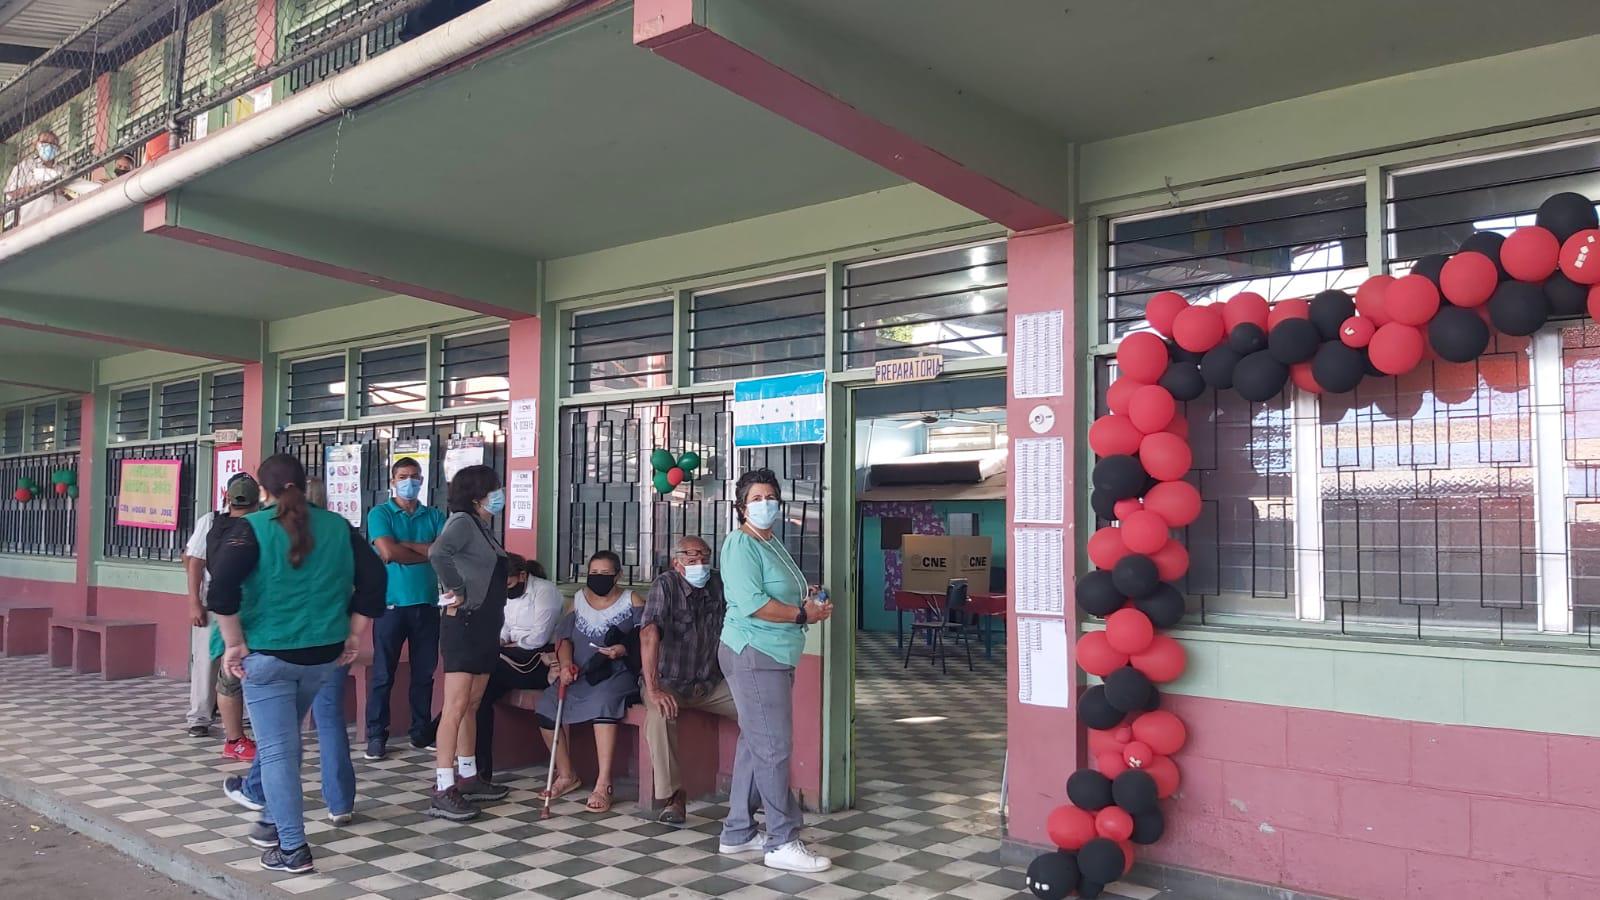 $!En completo orden comenzaron las votaciones en la escuela Castro López del barrio Medina de San Pedro Sula.